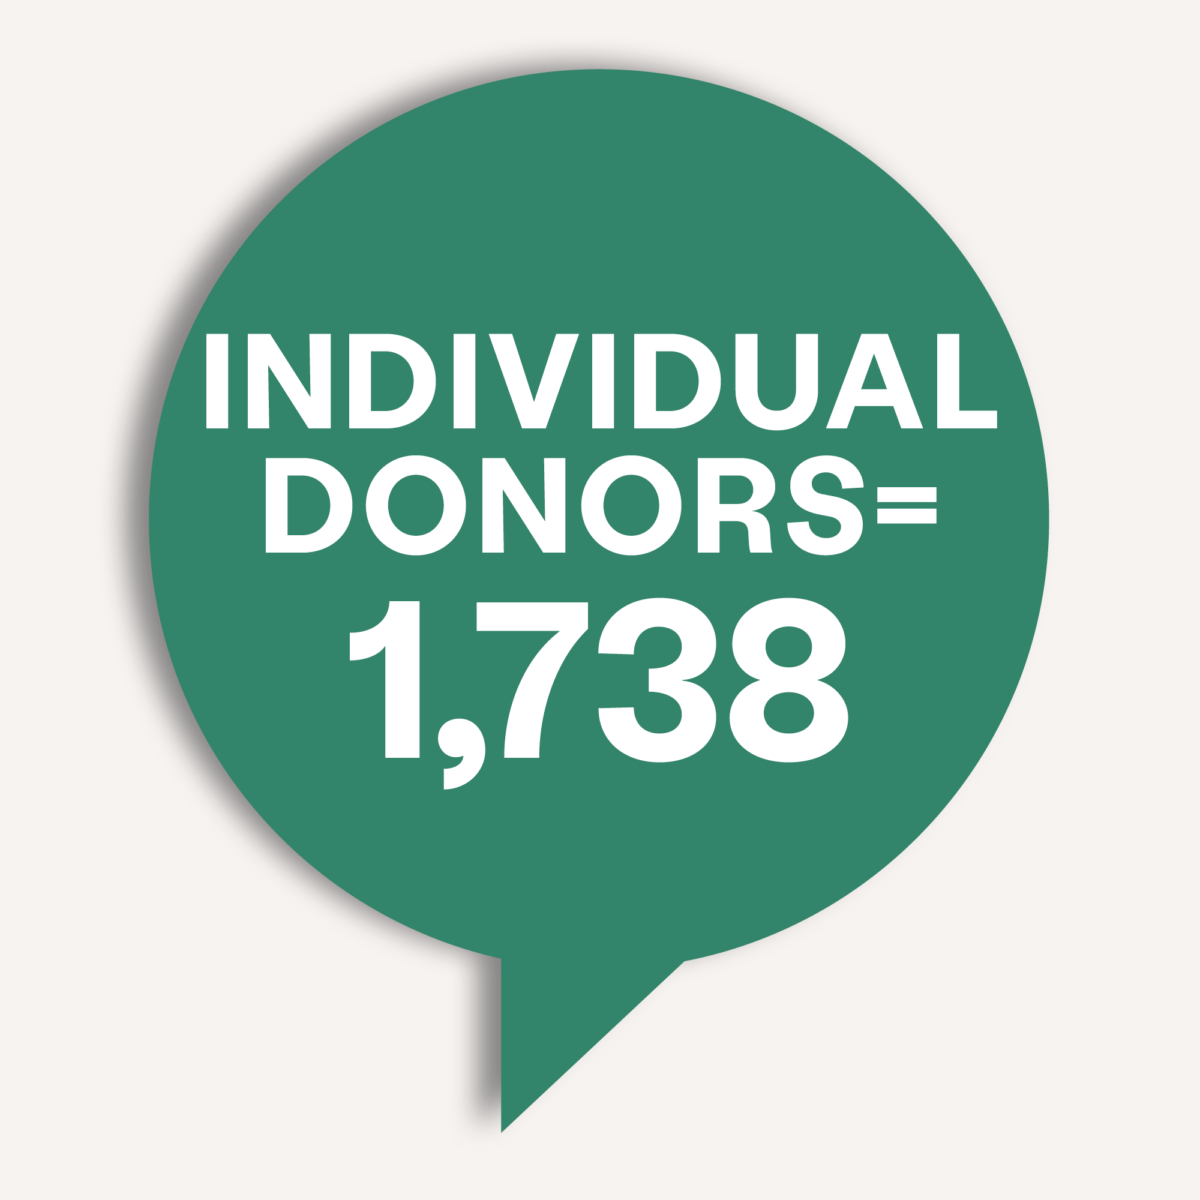 Individual donors